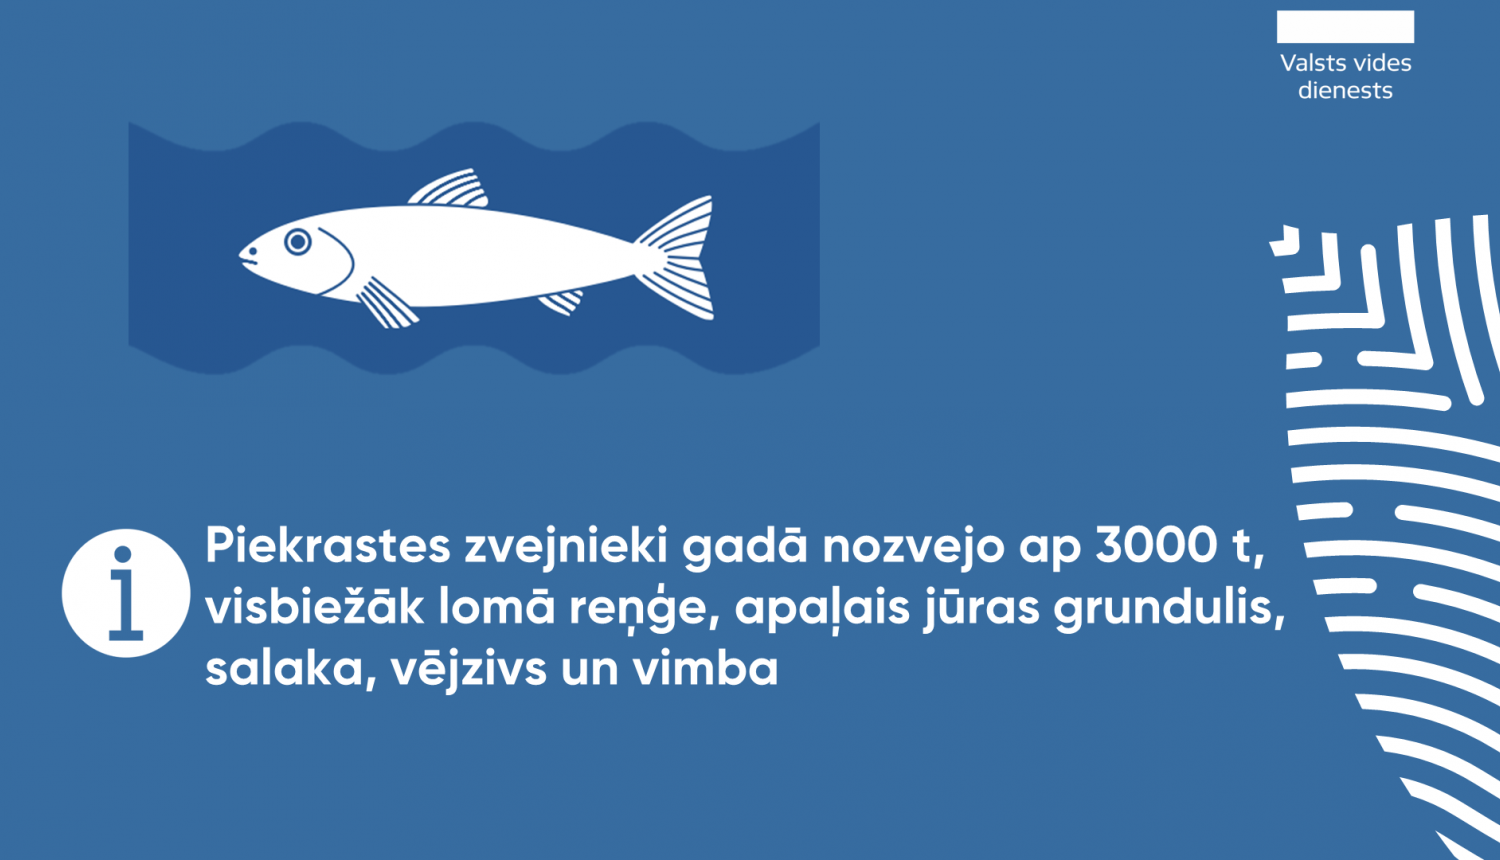 Piekrastes zvejnieki gadā nozvejo ap 3000 t, visbiežāk lomā reņģe, apaļais jūras grundulis, salaka, vējzivs un vimba